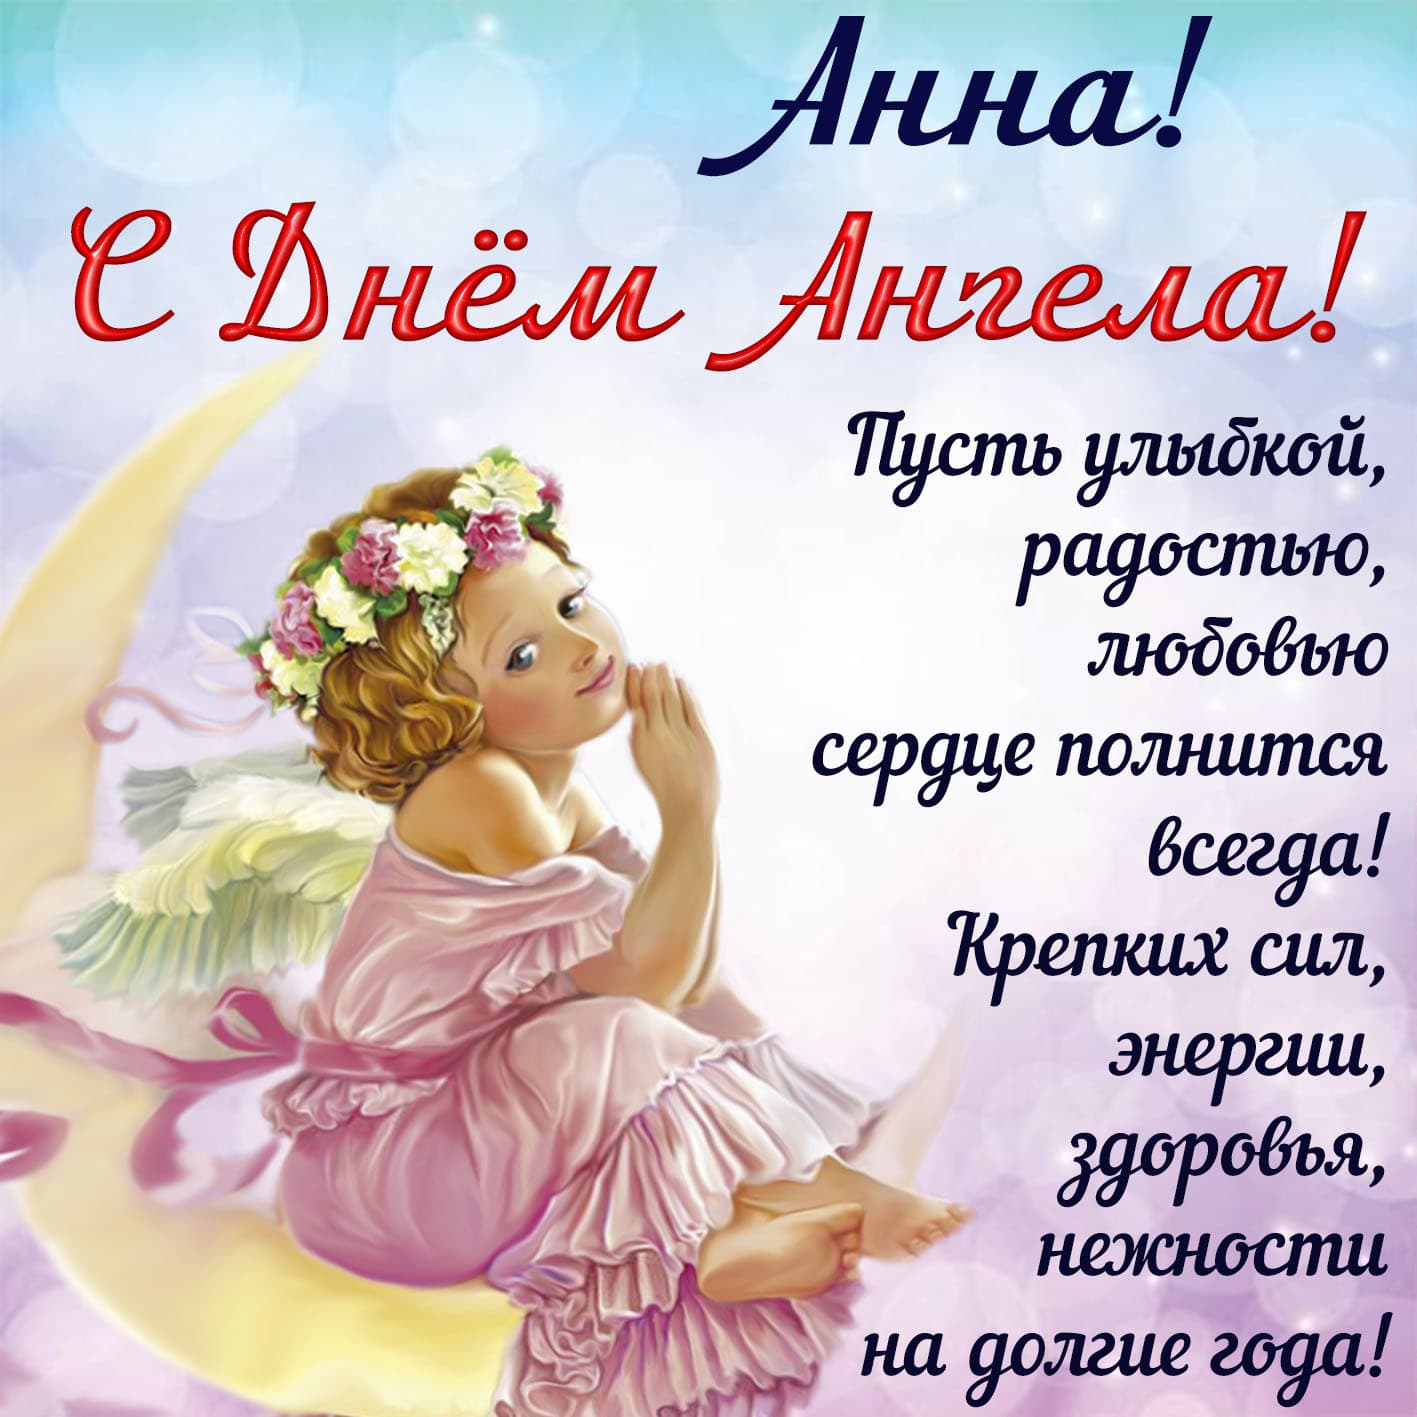 Поздравительная нежная открытка анна, с днем ангела